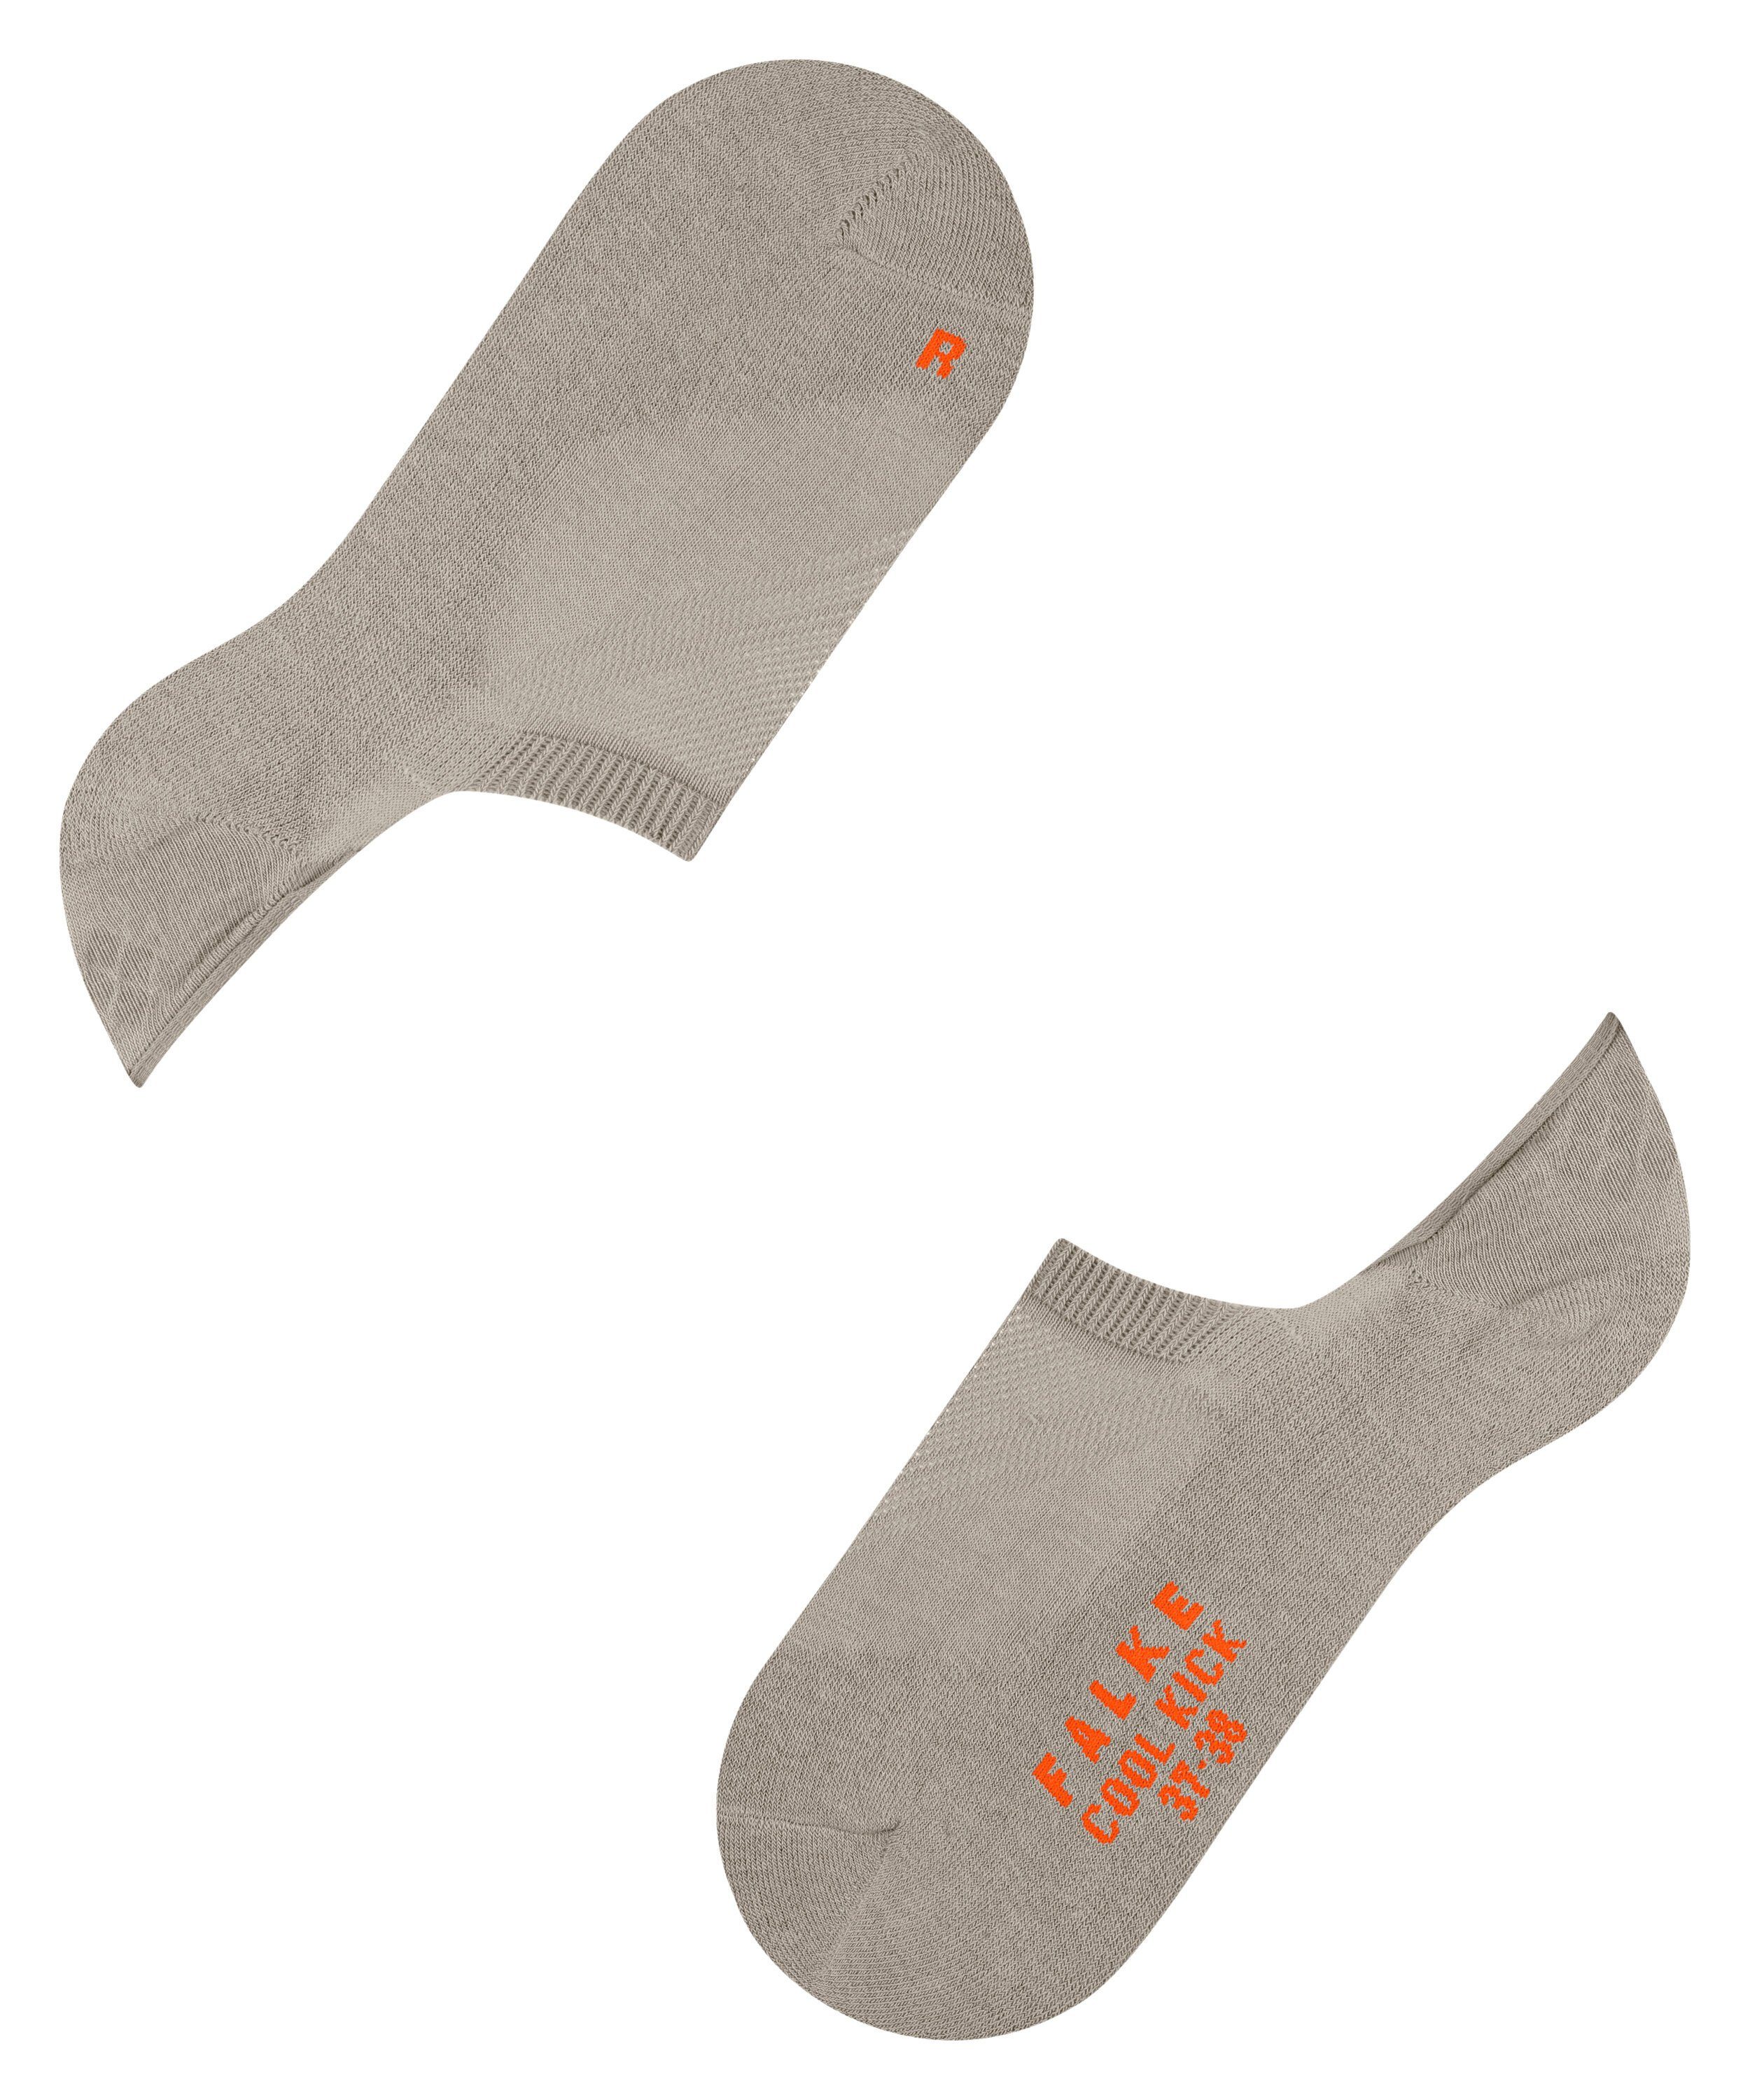 Kick rutschfest FALKE towel durch Silikon Füßlinge (4775) Cool in der Ferse